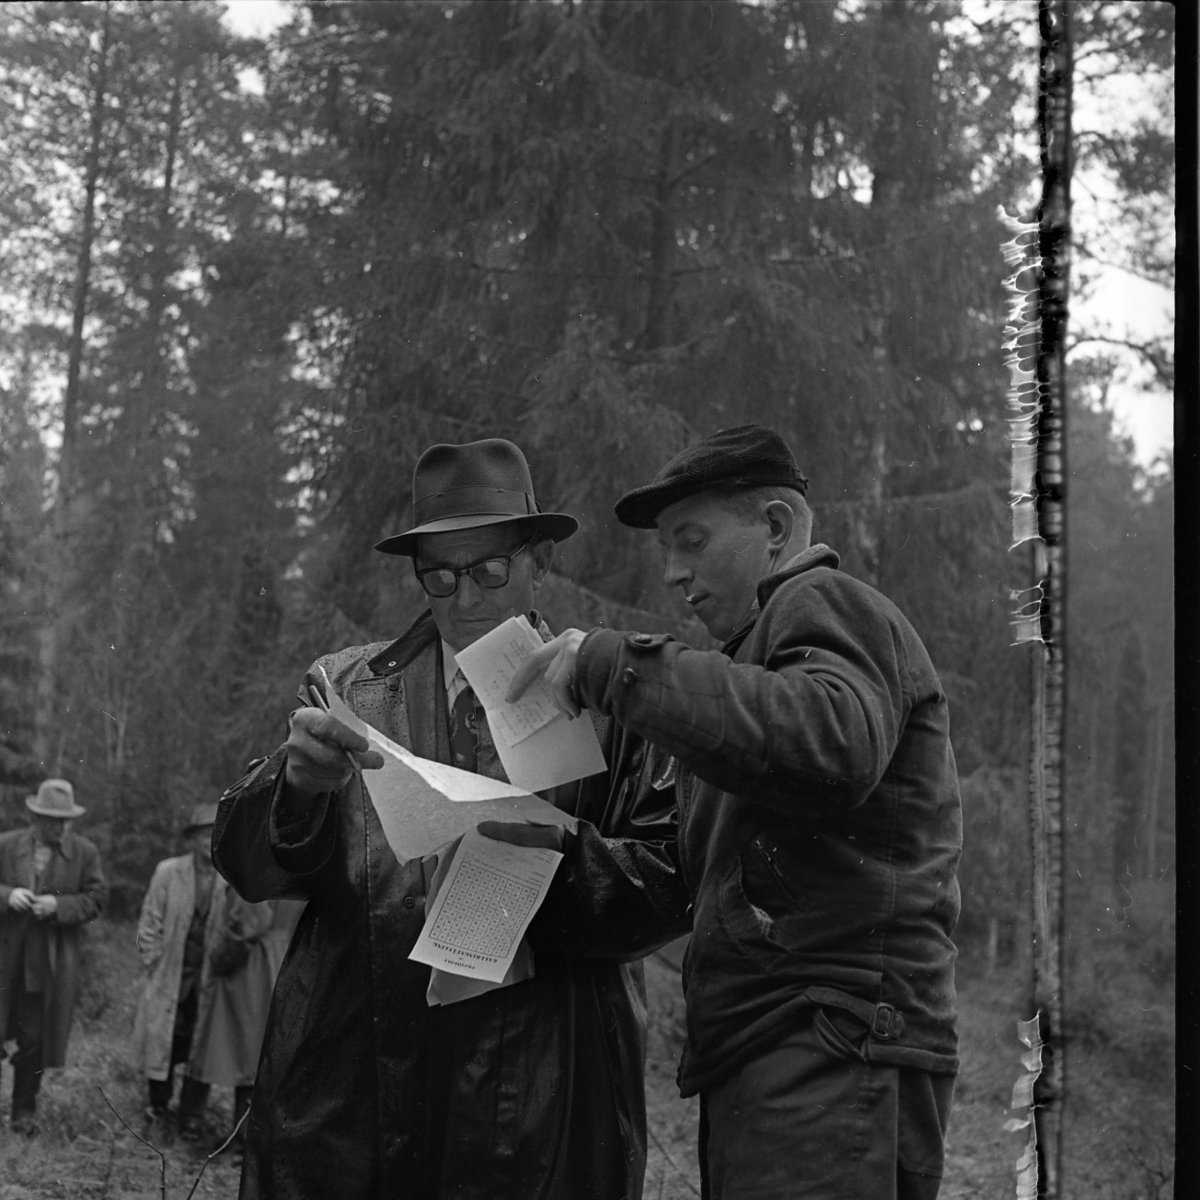 Två män står och betracktar några papper. De befinner sig i en skog.